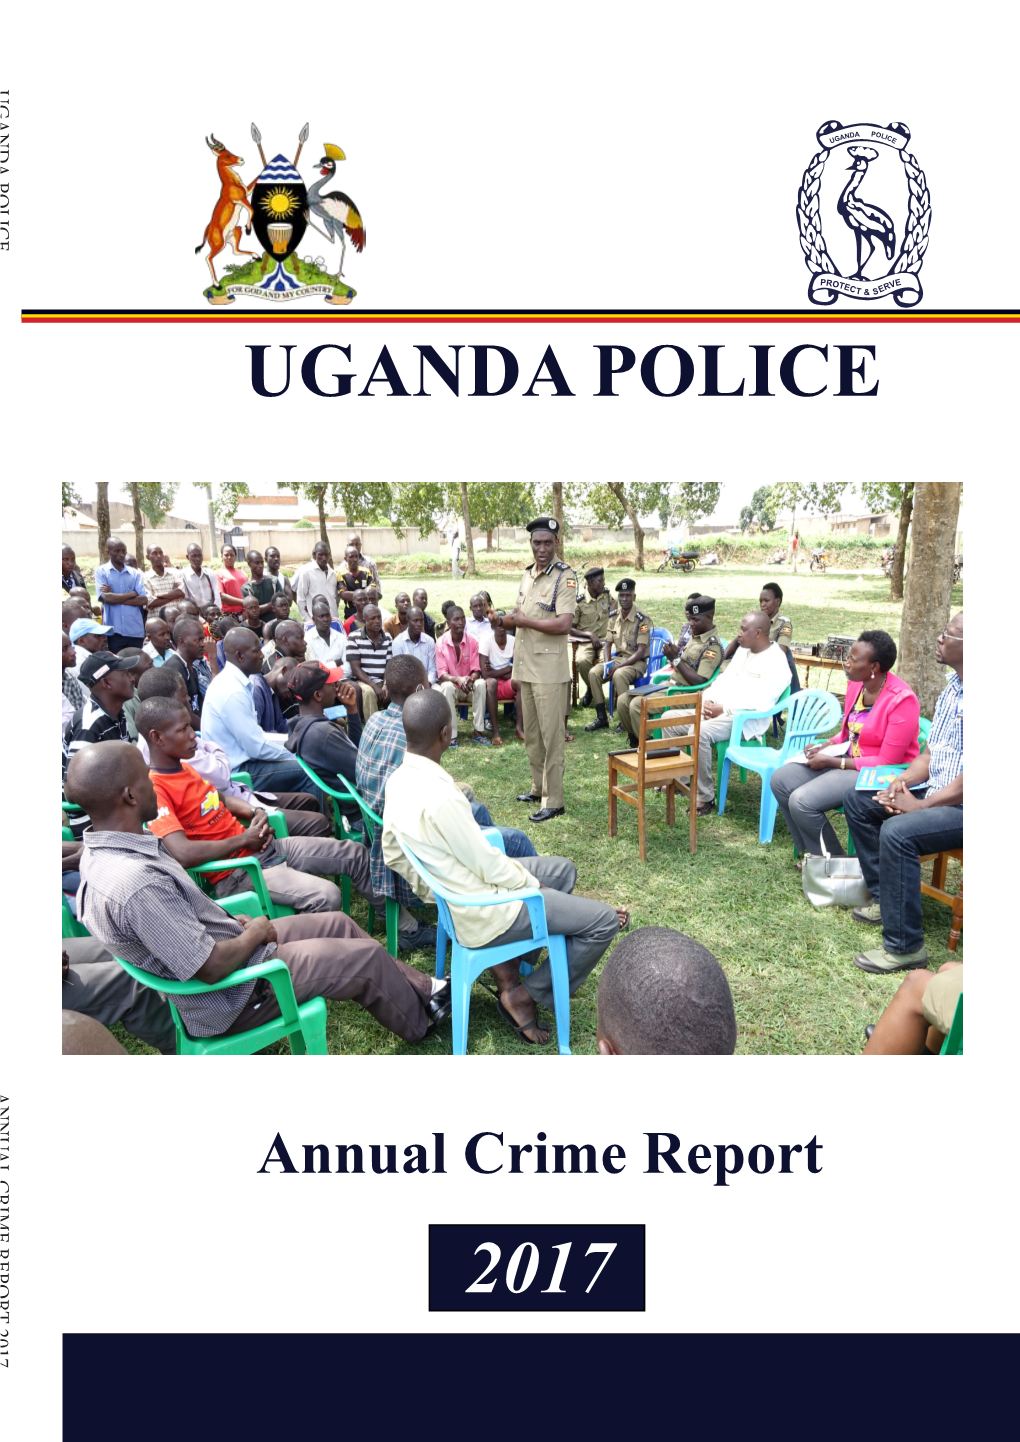 Annual Crime Report 2017